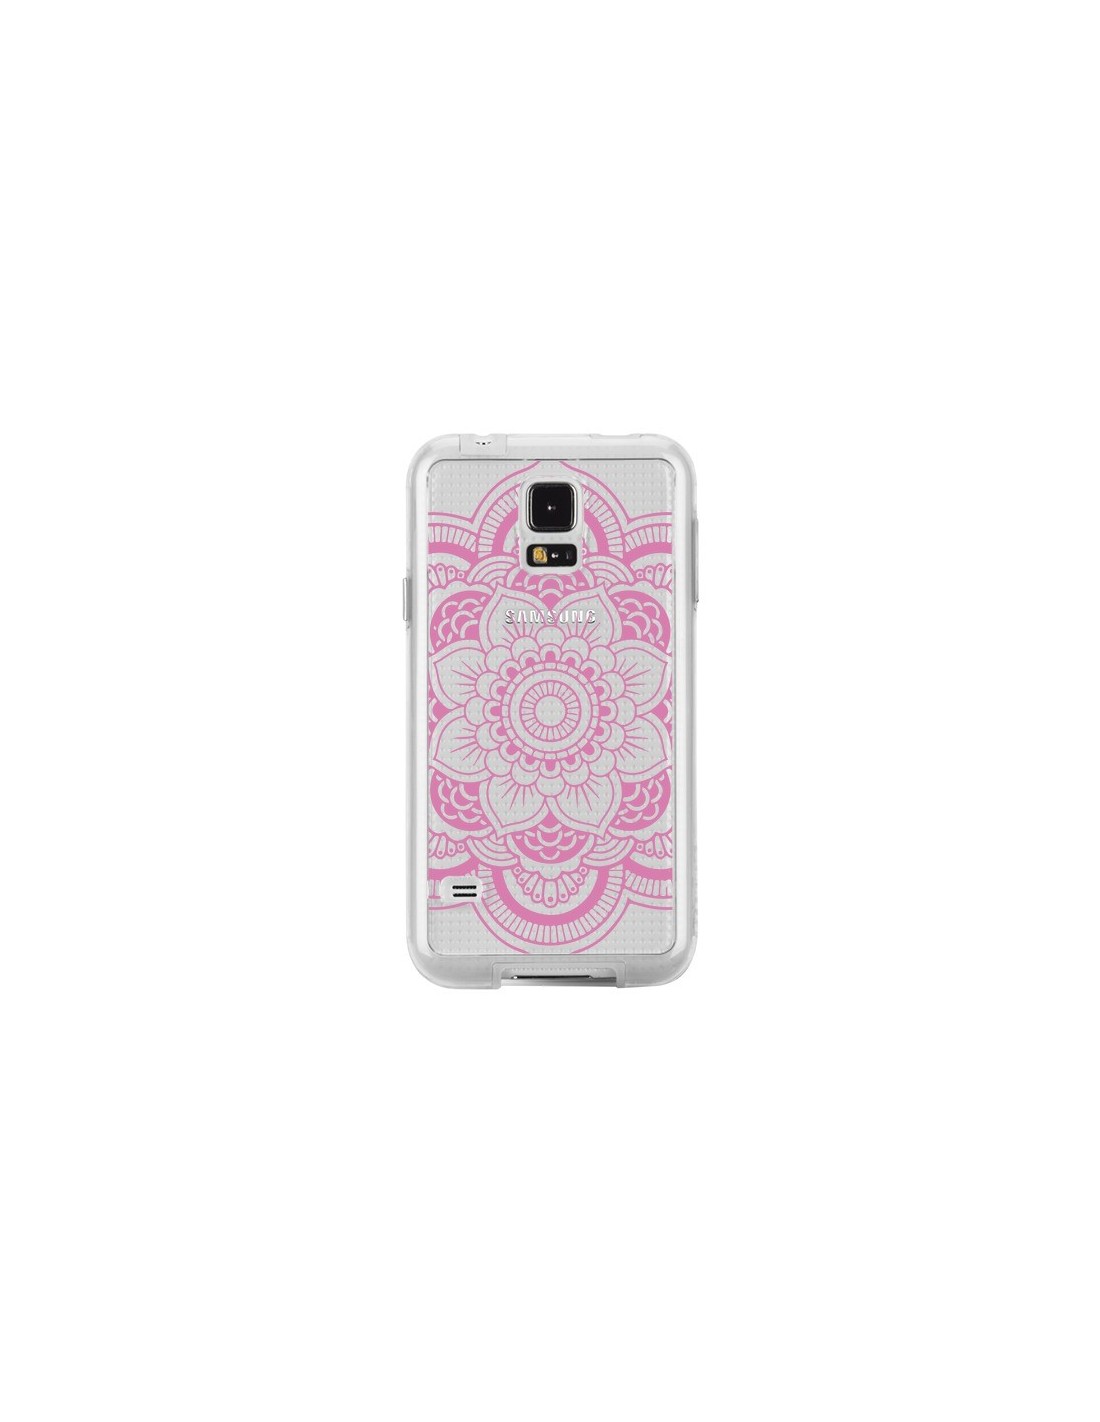 Coque Mandala Rose Clair Azteque Transparente pour Samsung Galaxy S5 - Nico